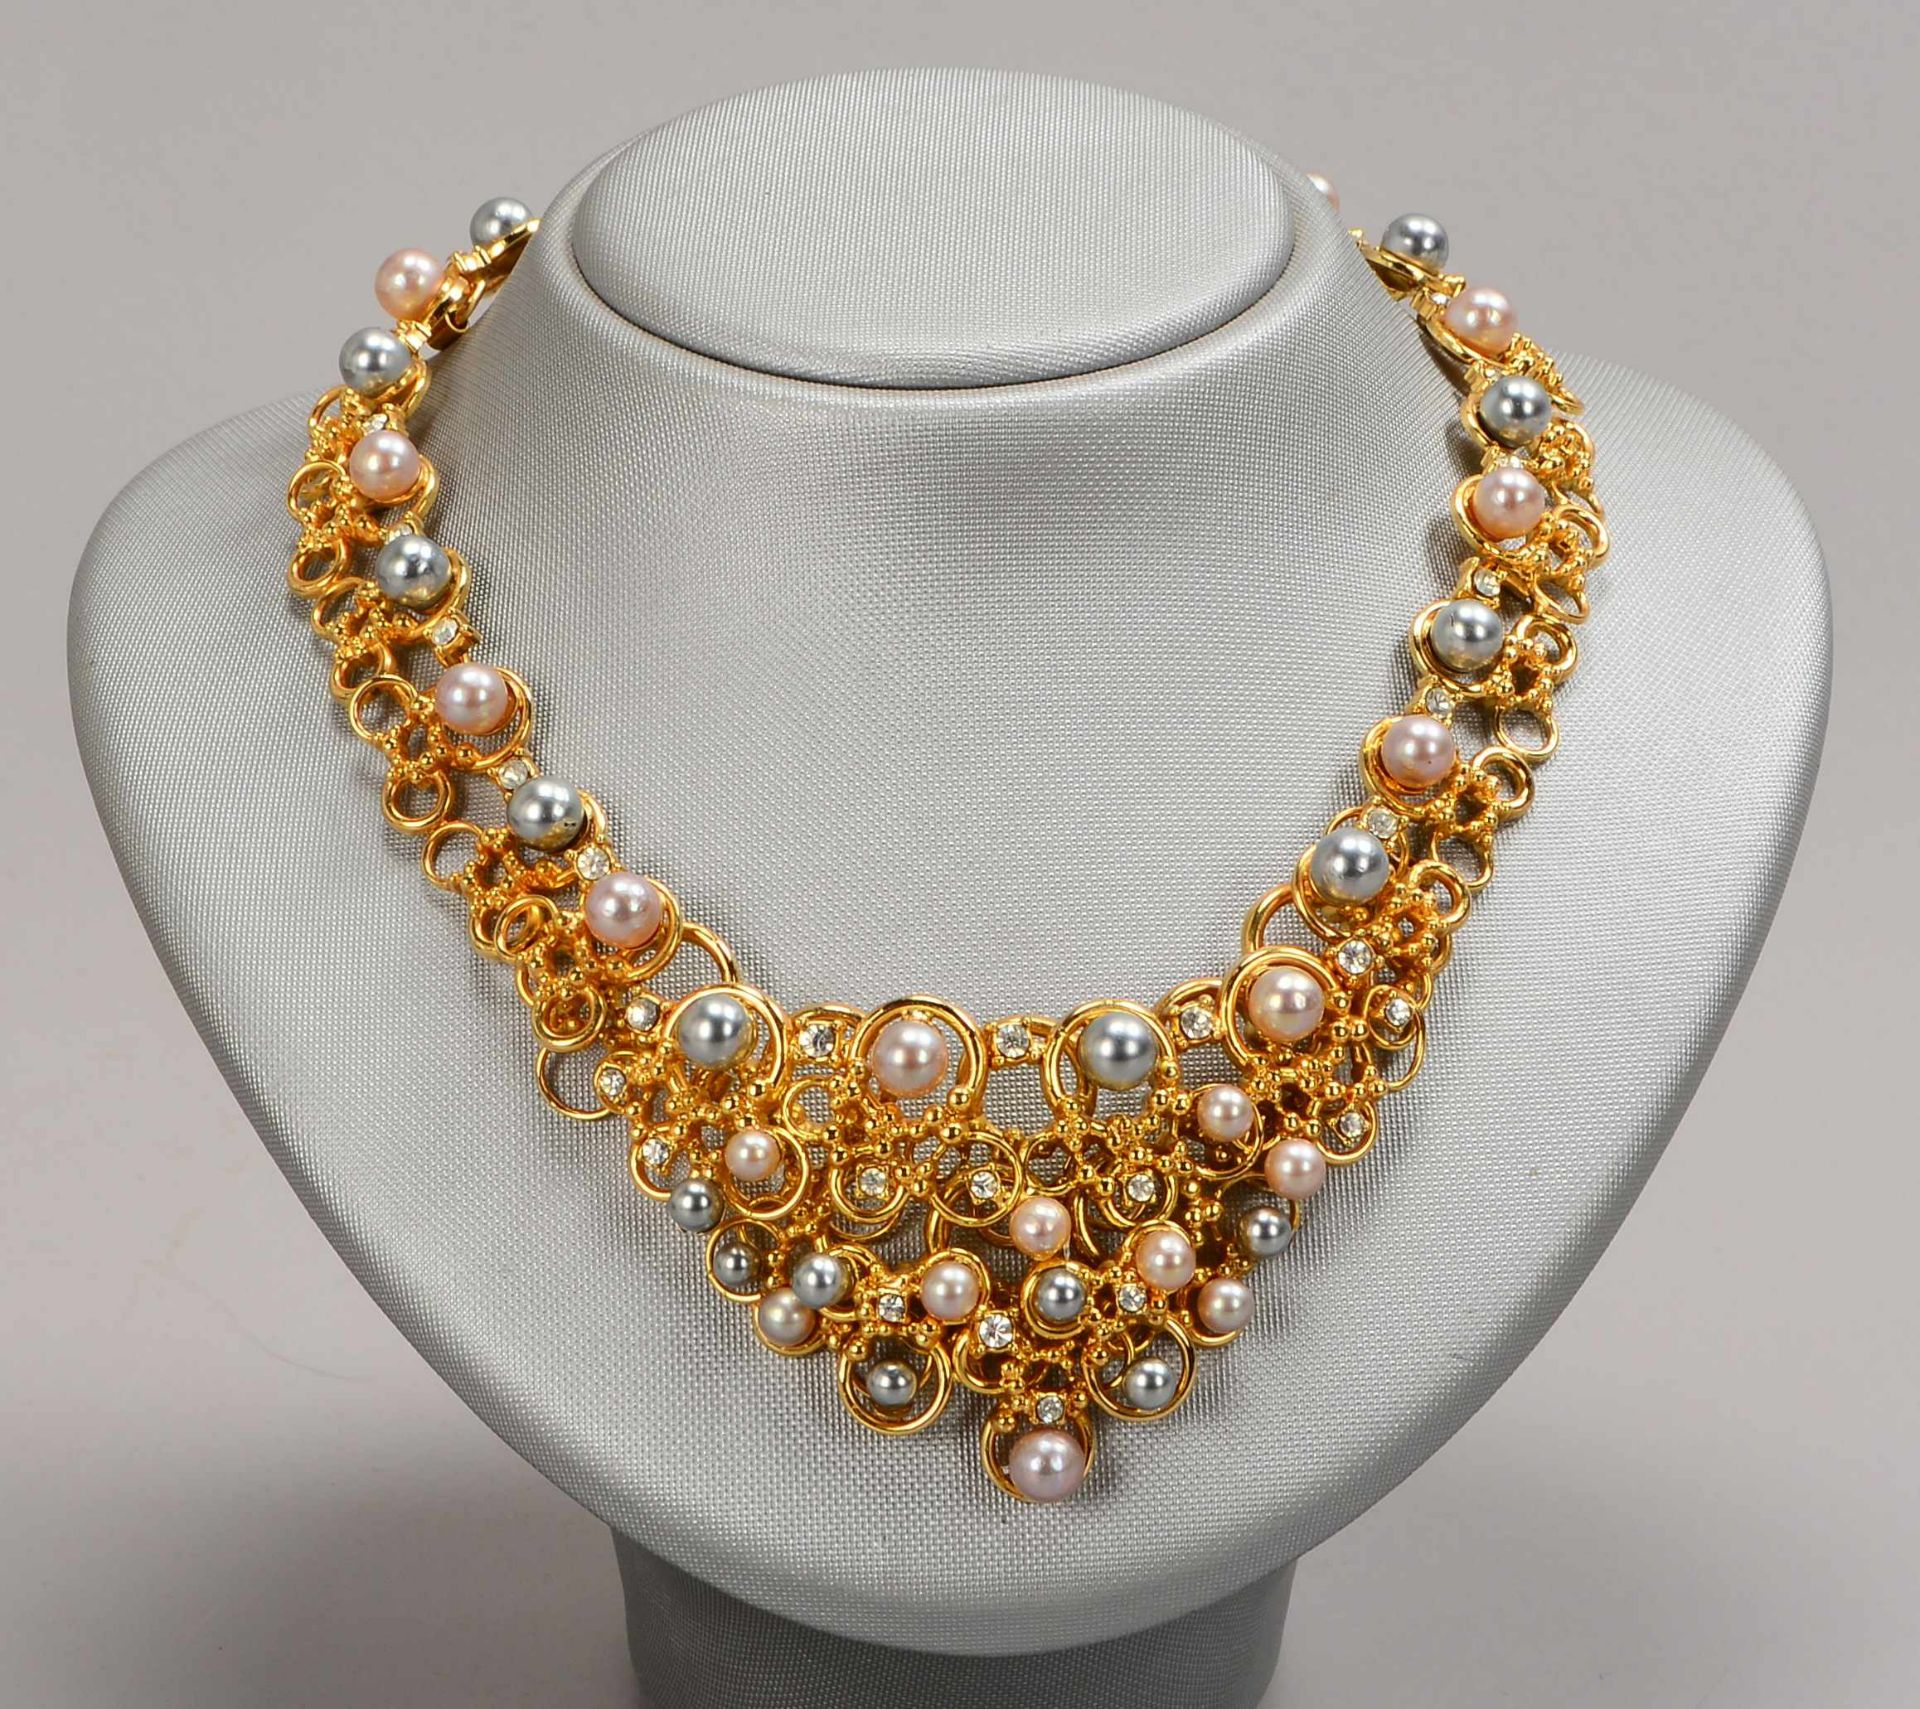 Christian Dior, Modeschmuck-Collier, vergoldet, mit Perlenbesatz und Schmucksteinbesatz, mit Stecksc